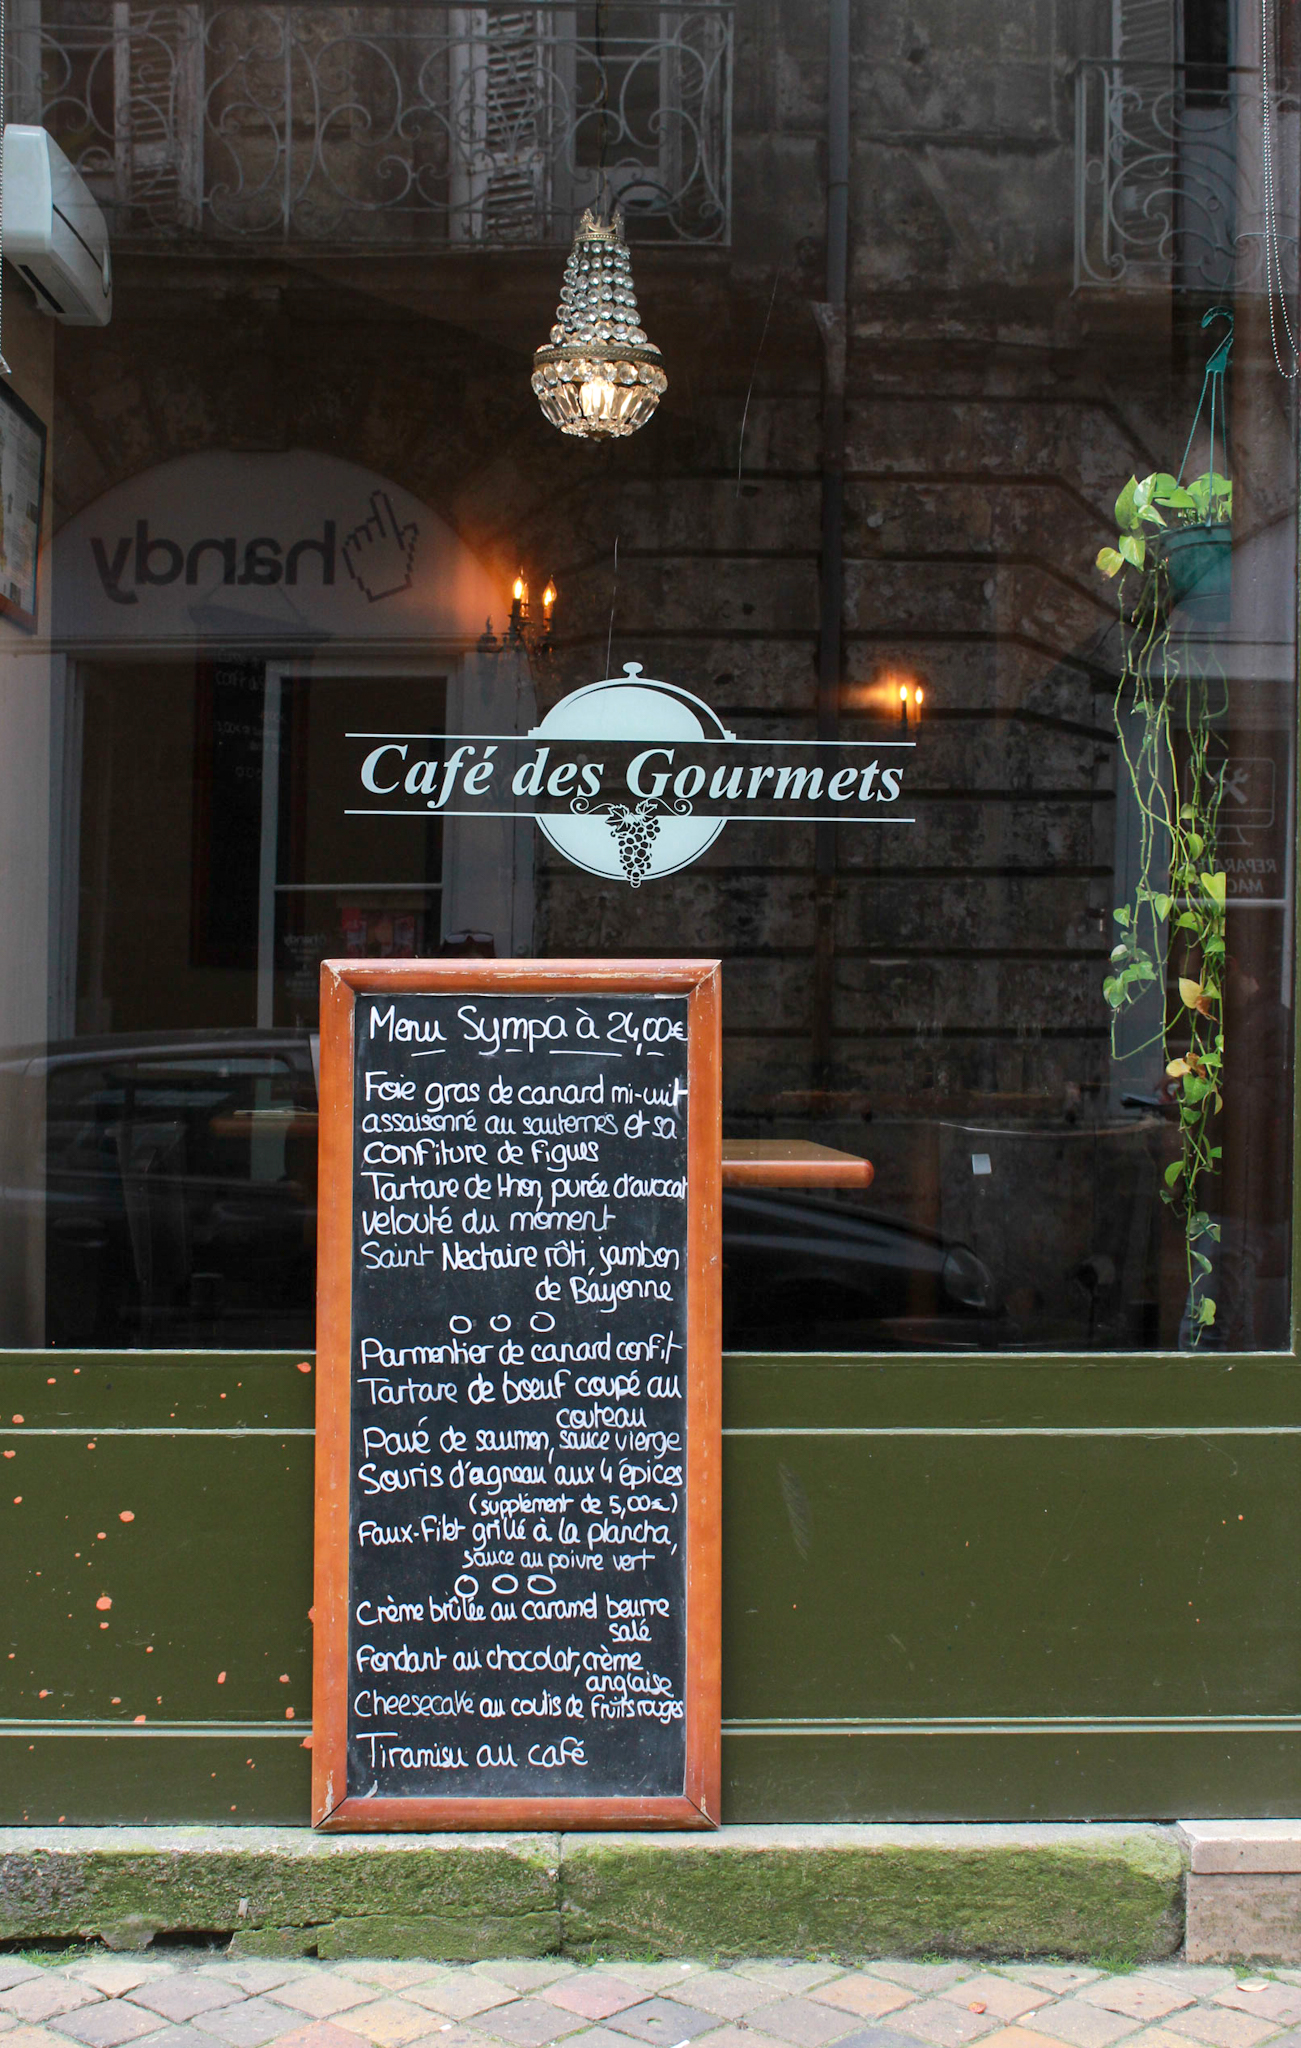 Café des Gourmets